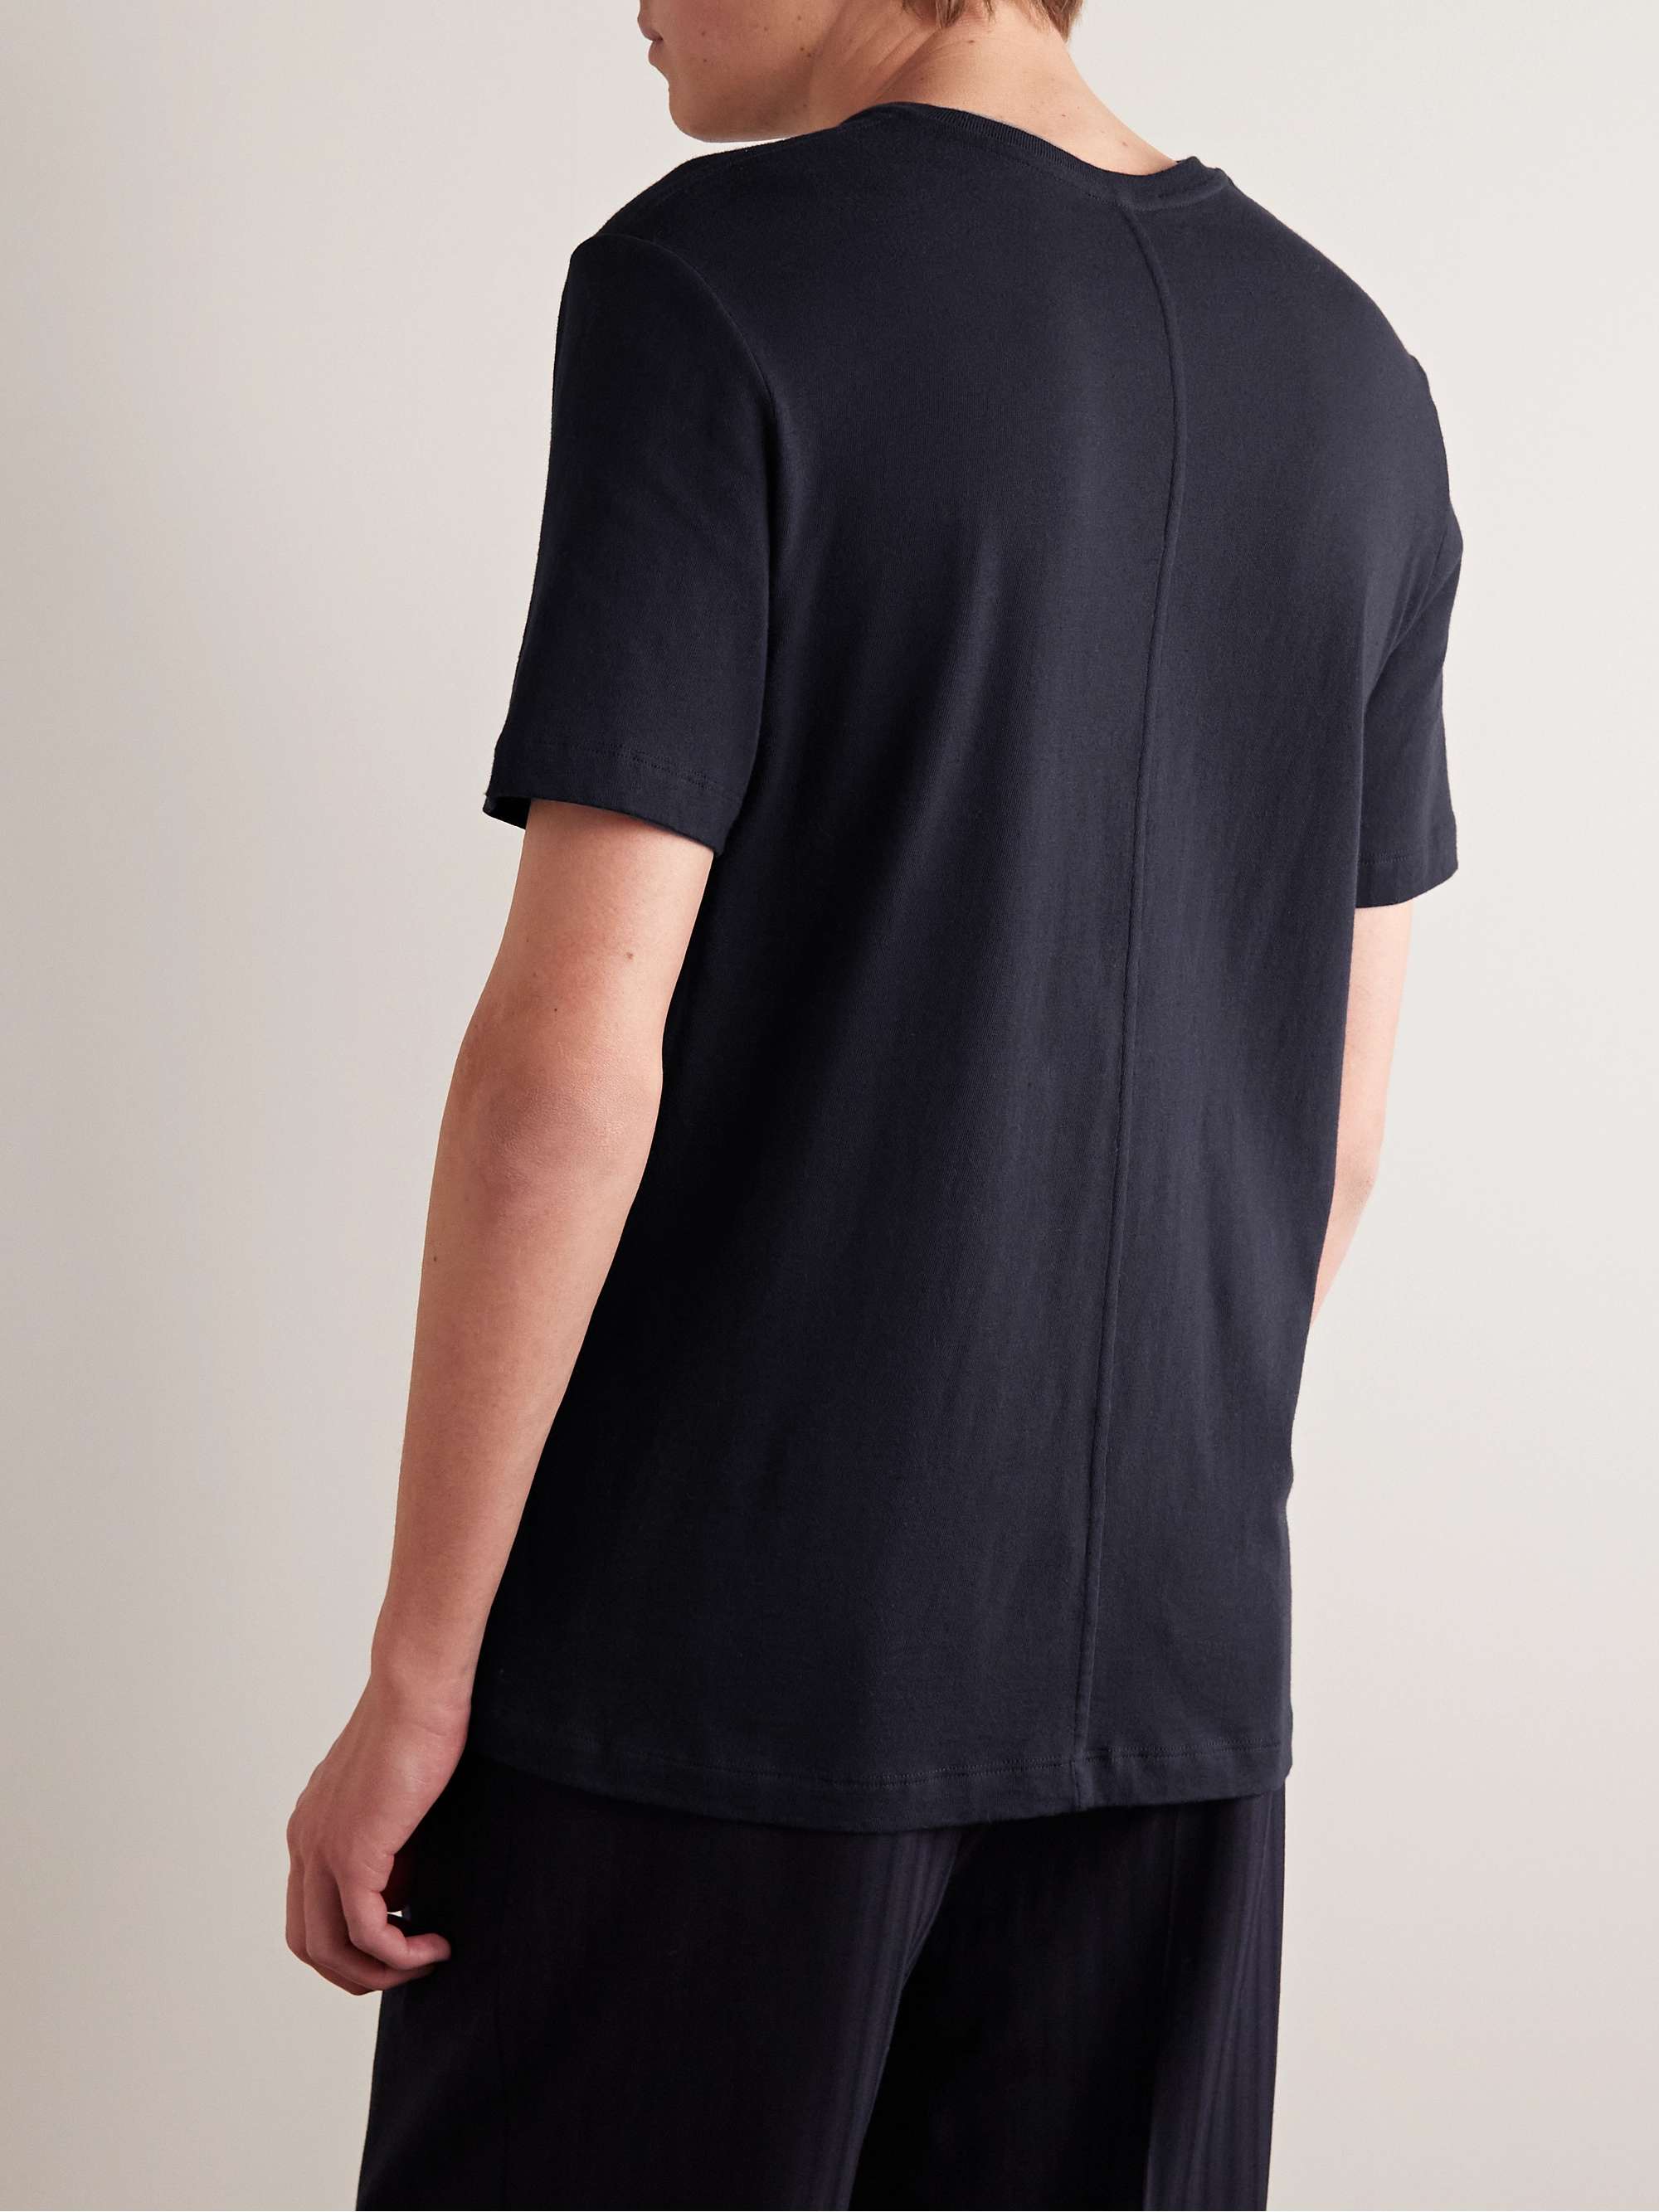 THE ROW Luke Cotton T-Shirt for Men | MR PORTER